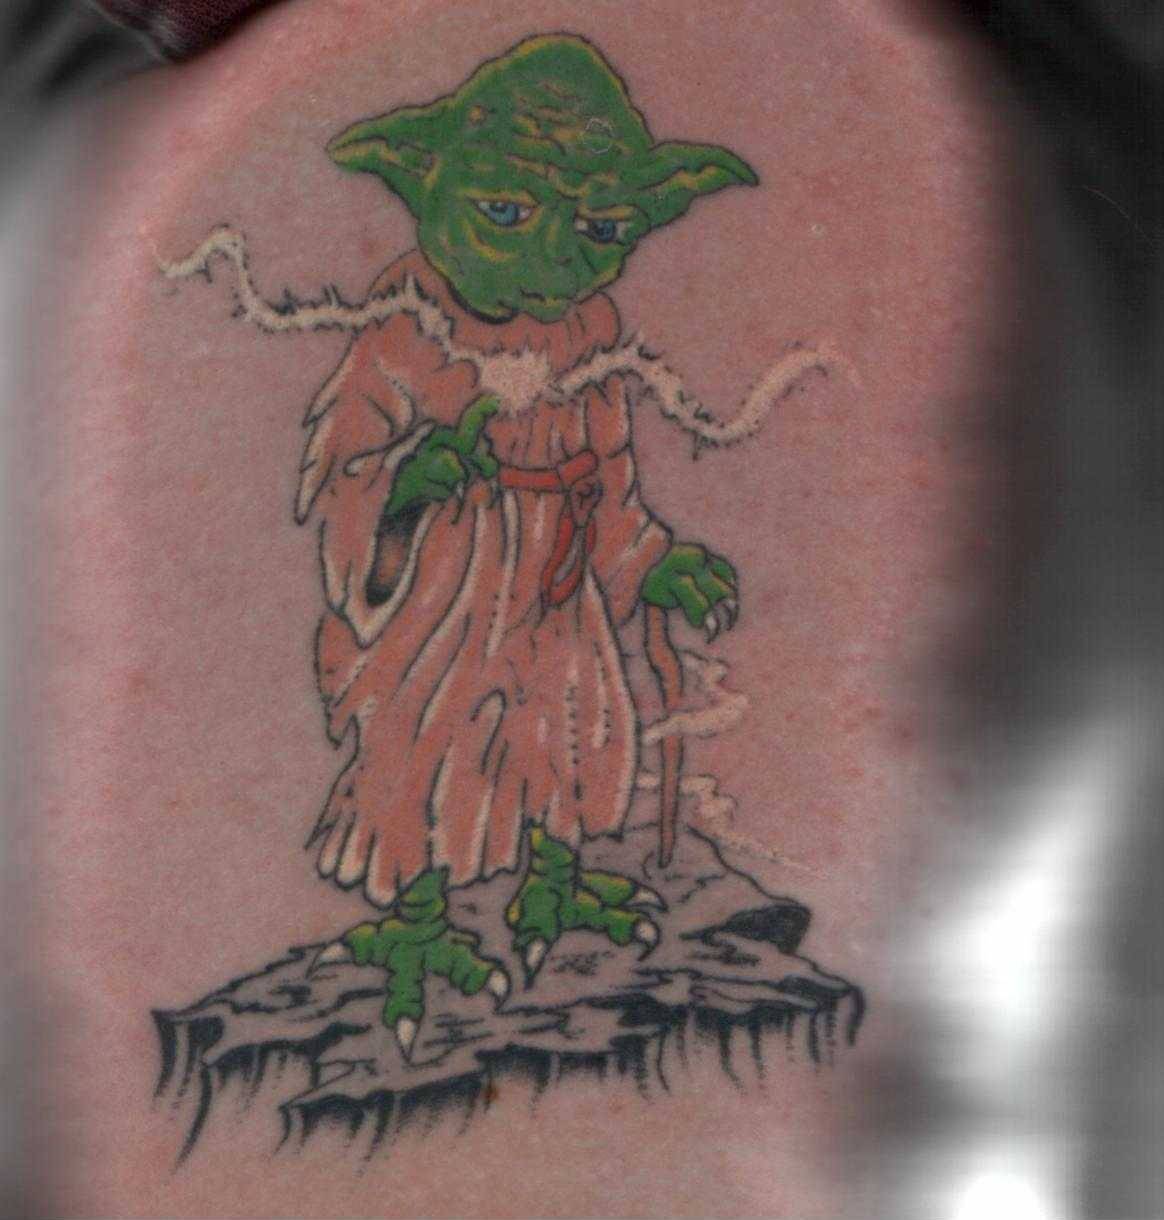 A Yoda tattoo